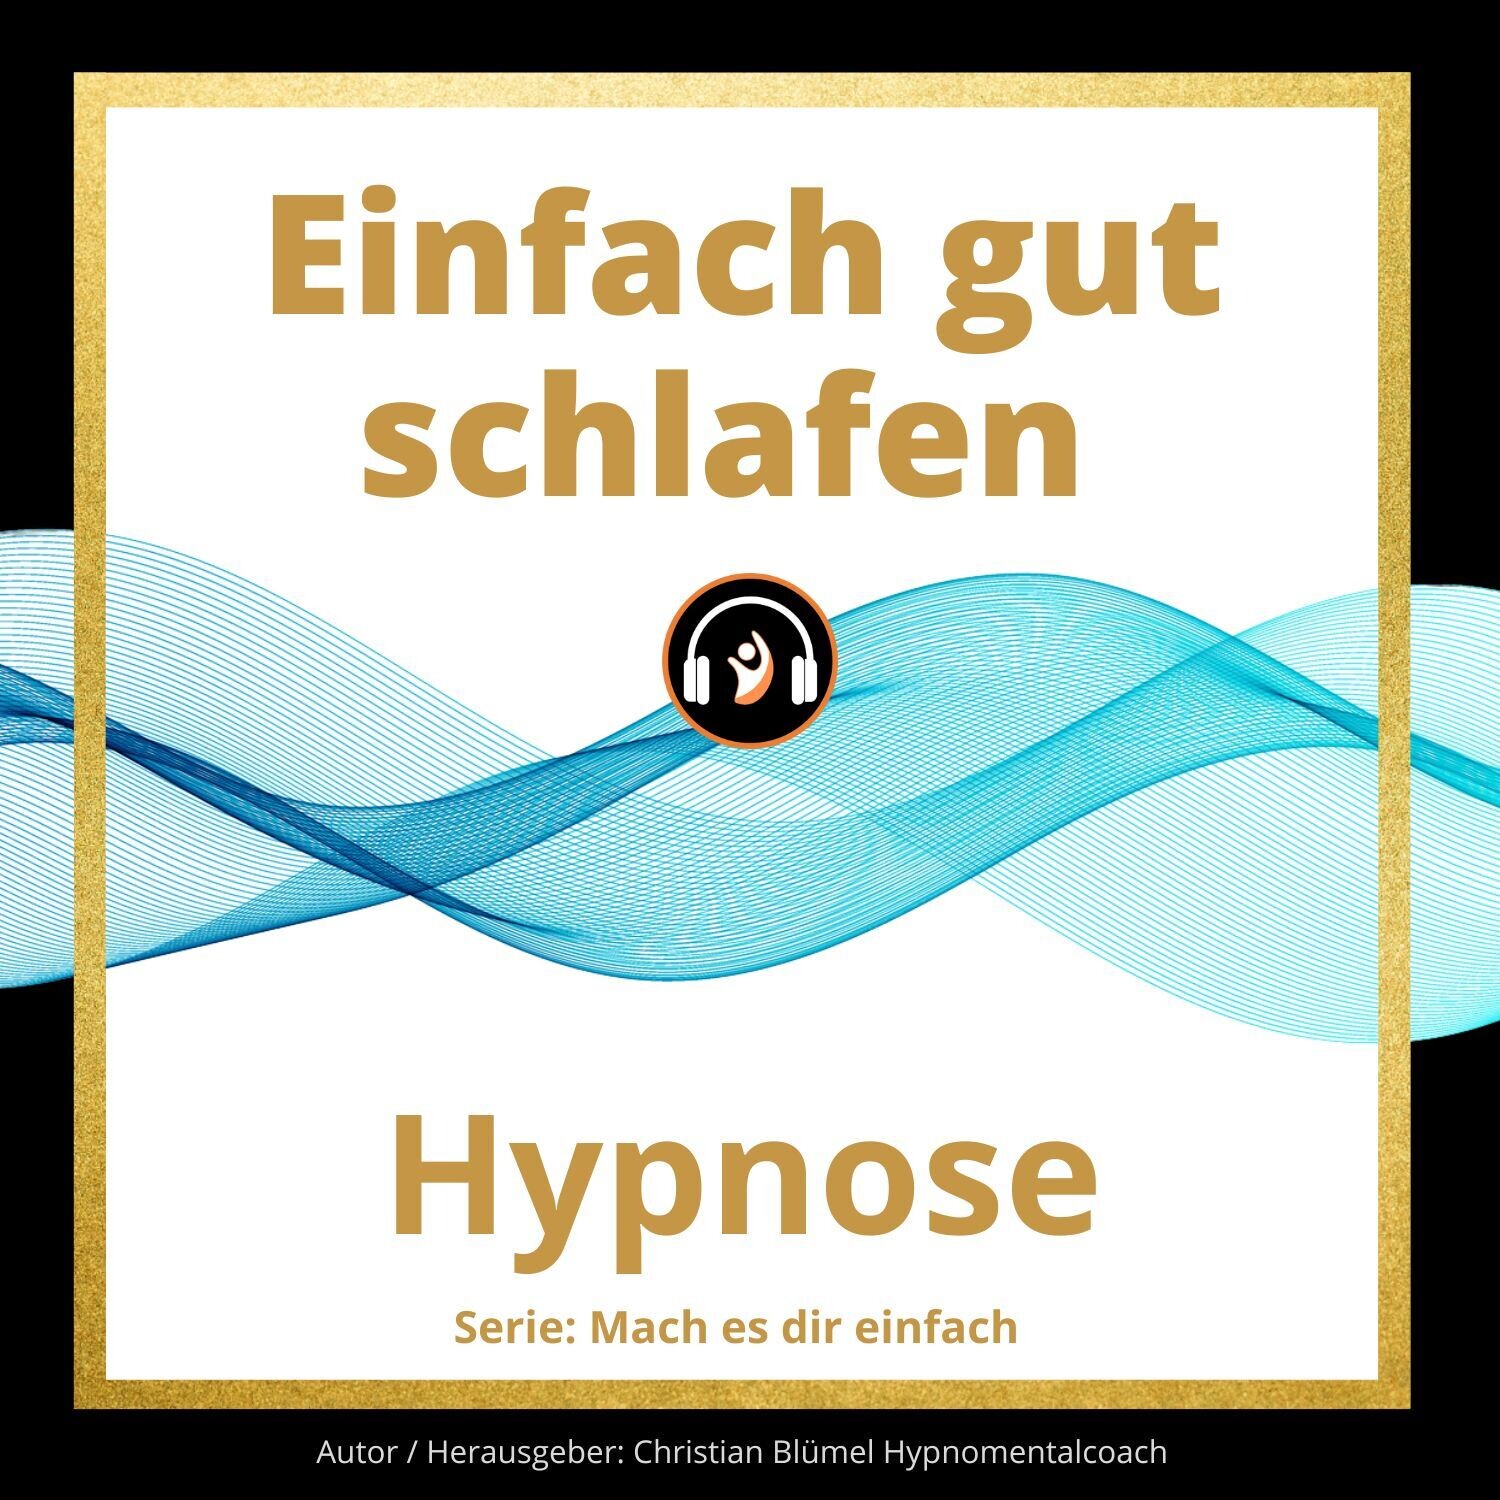 Audio Hypnose: einfach gut schlafen